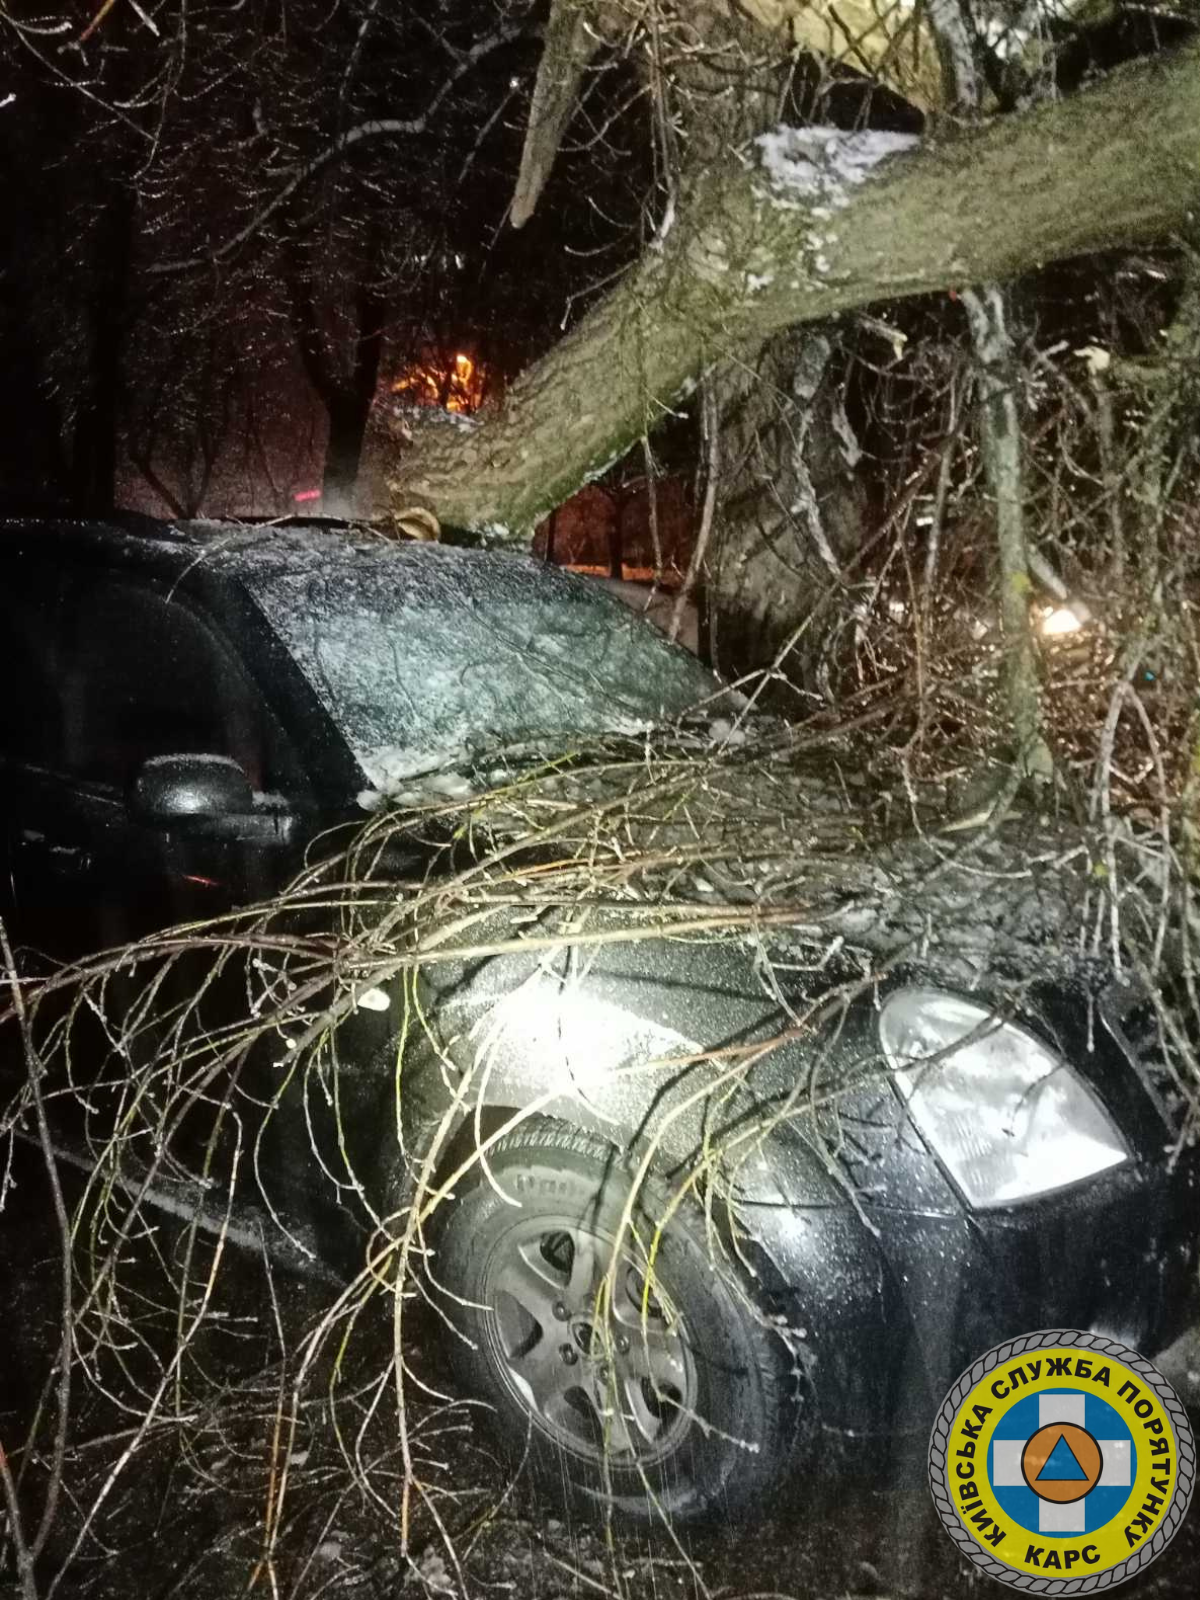 Через негоду у Києві зламано 120 дерев